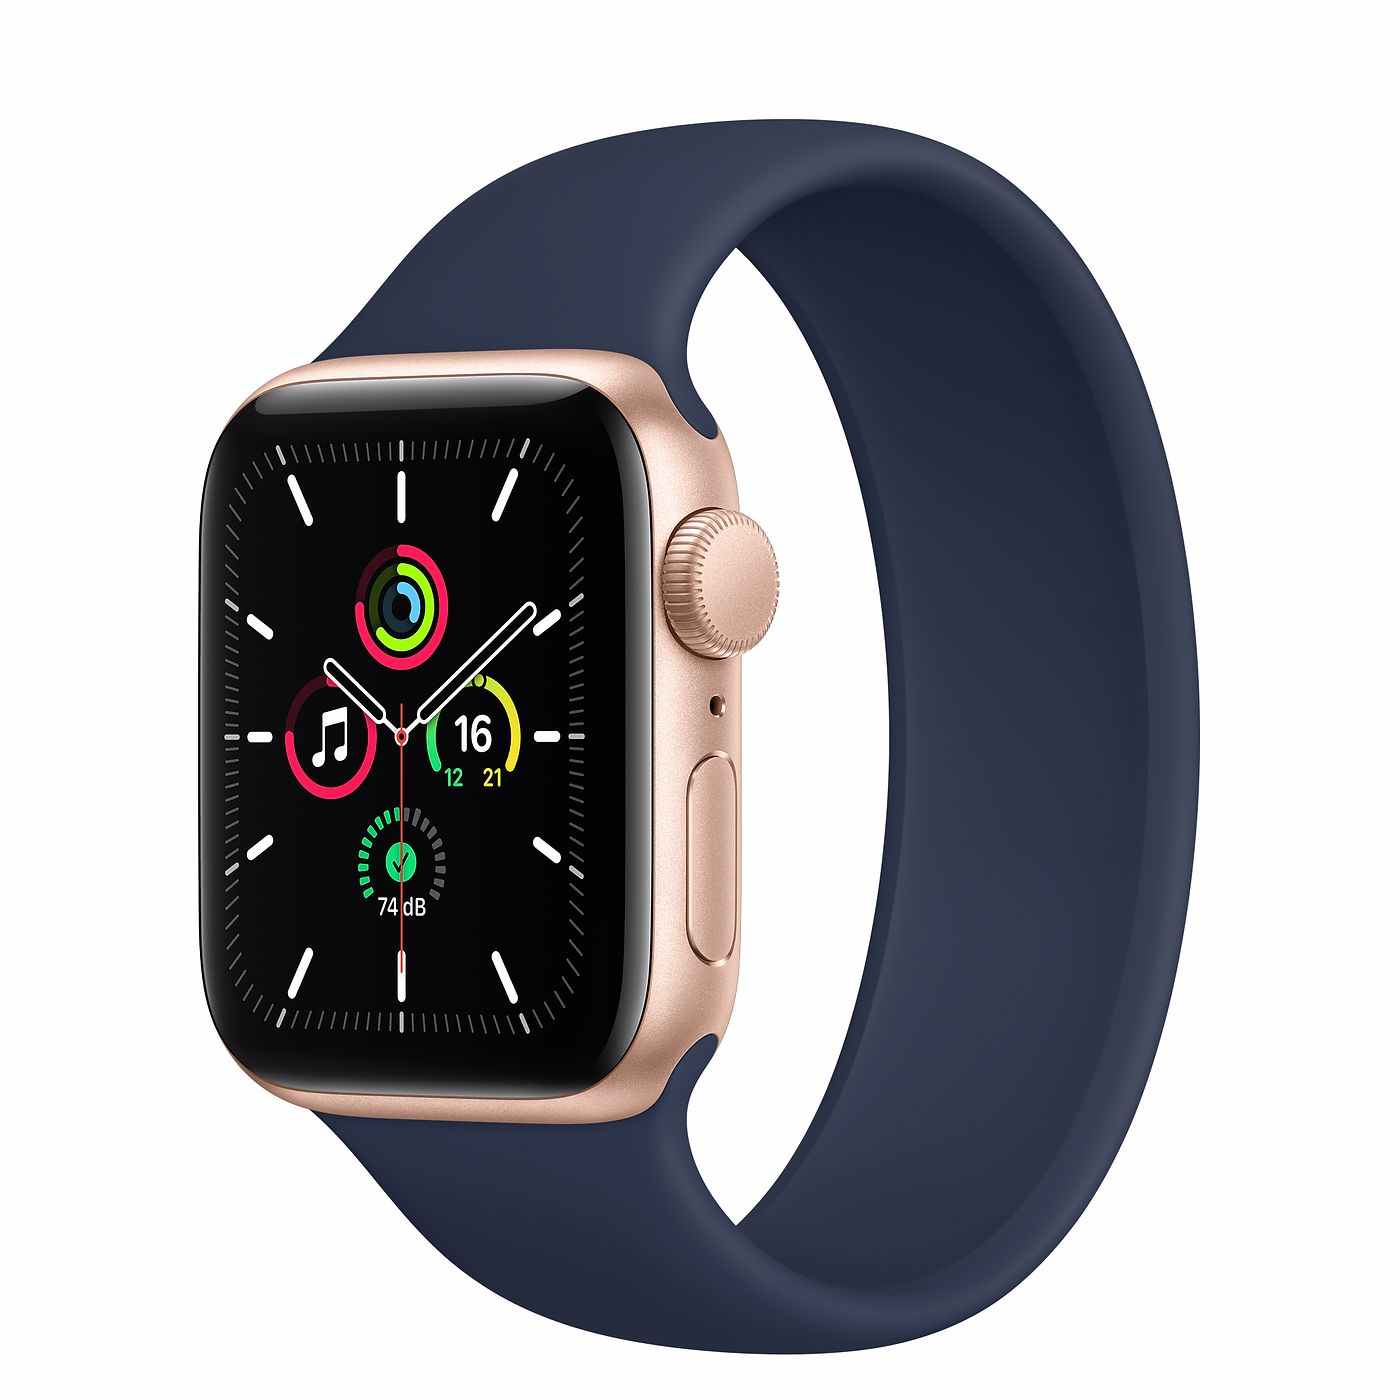  Apple Watch SE Toutes Les Caract ristiques Pour Comparer